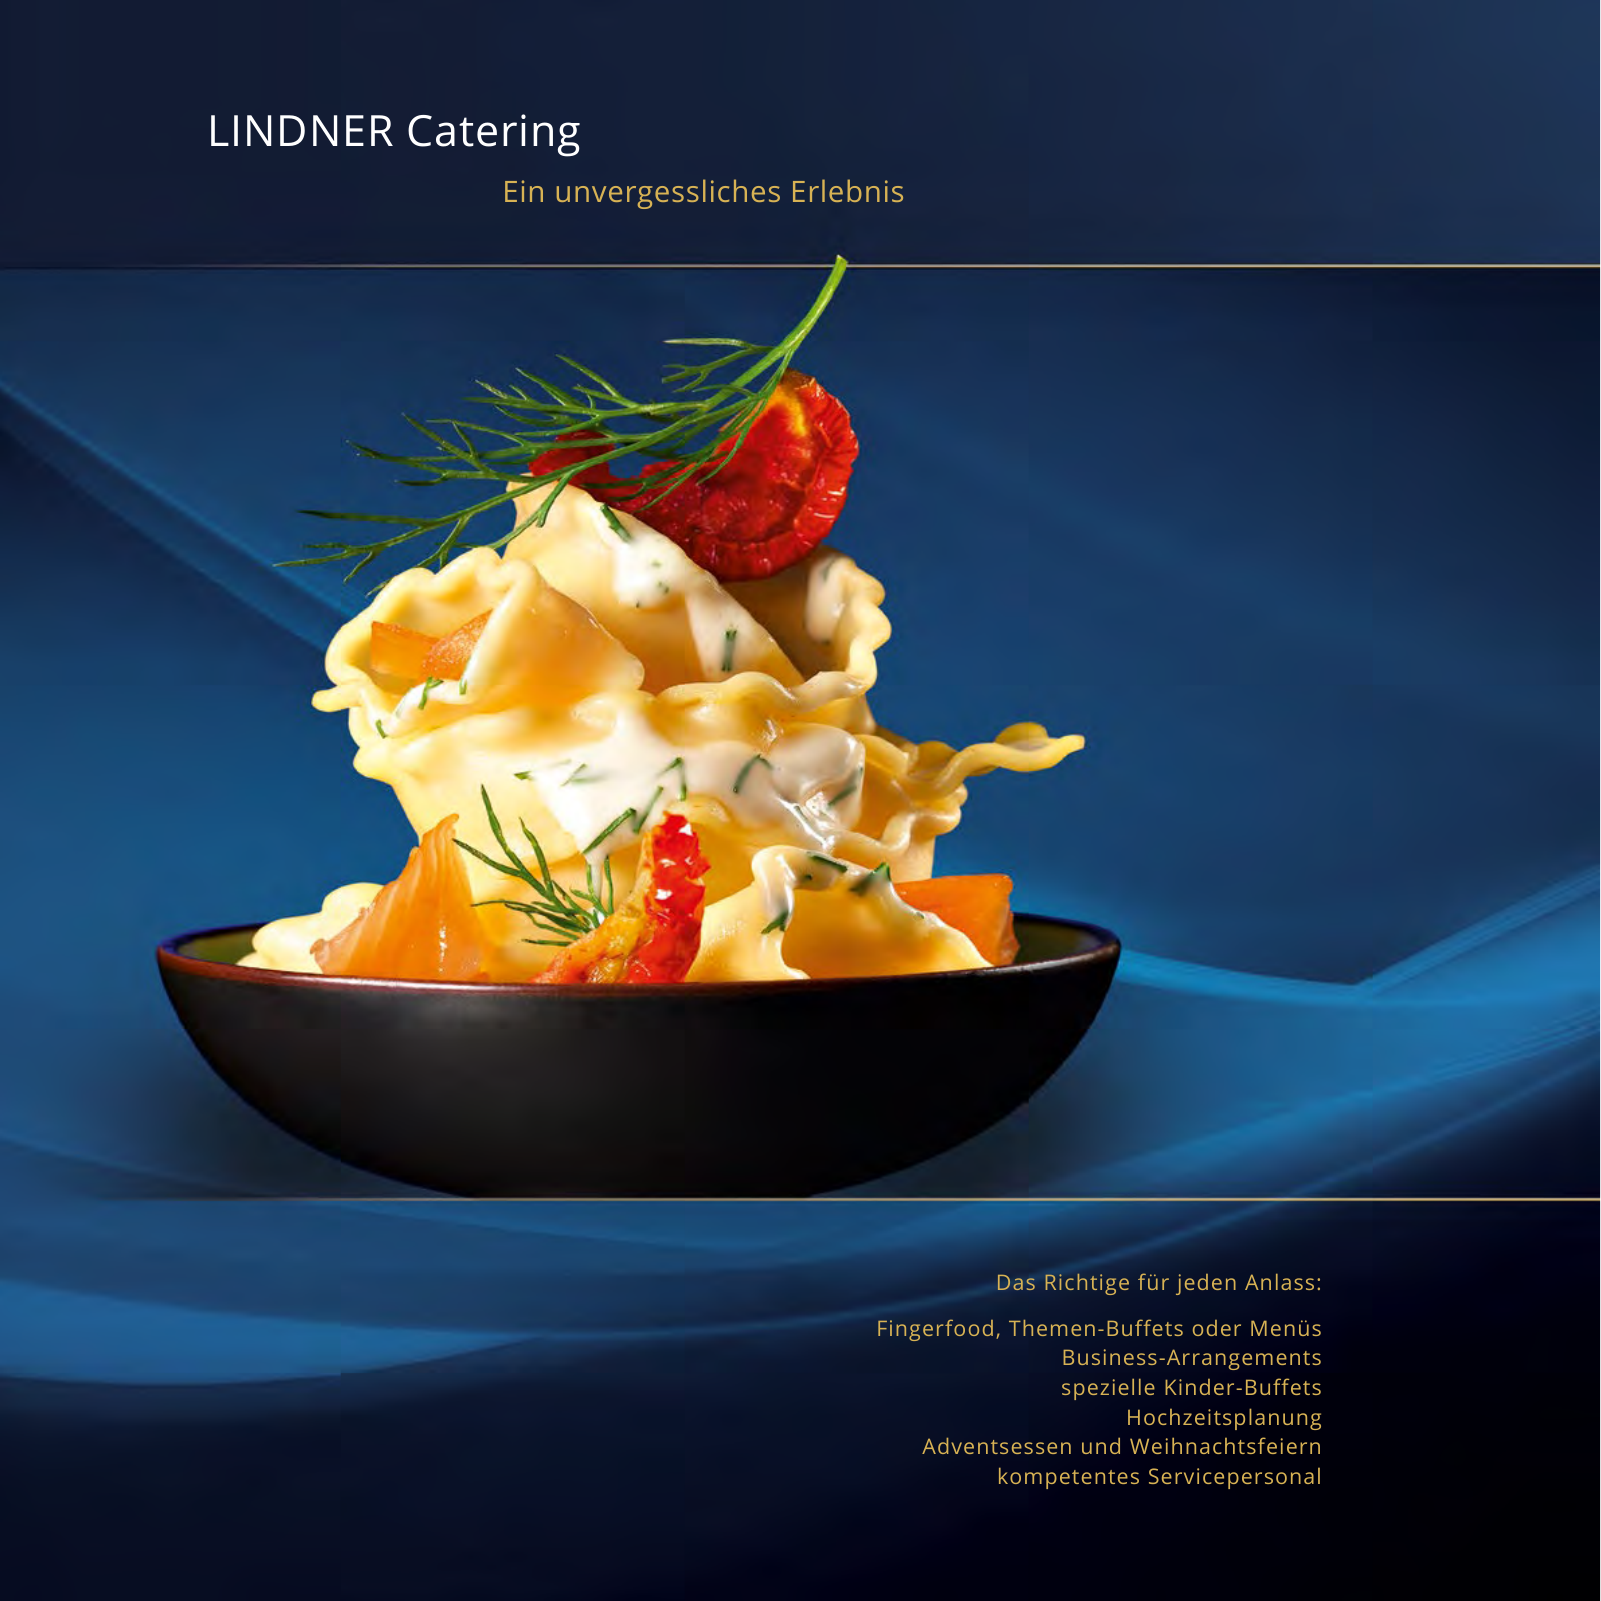 Vorschau Catering Katalog 2018/2019 Seite 2